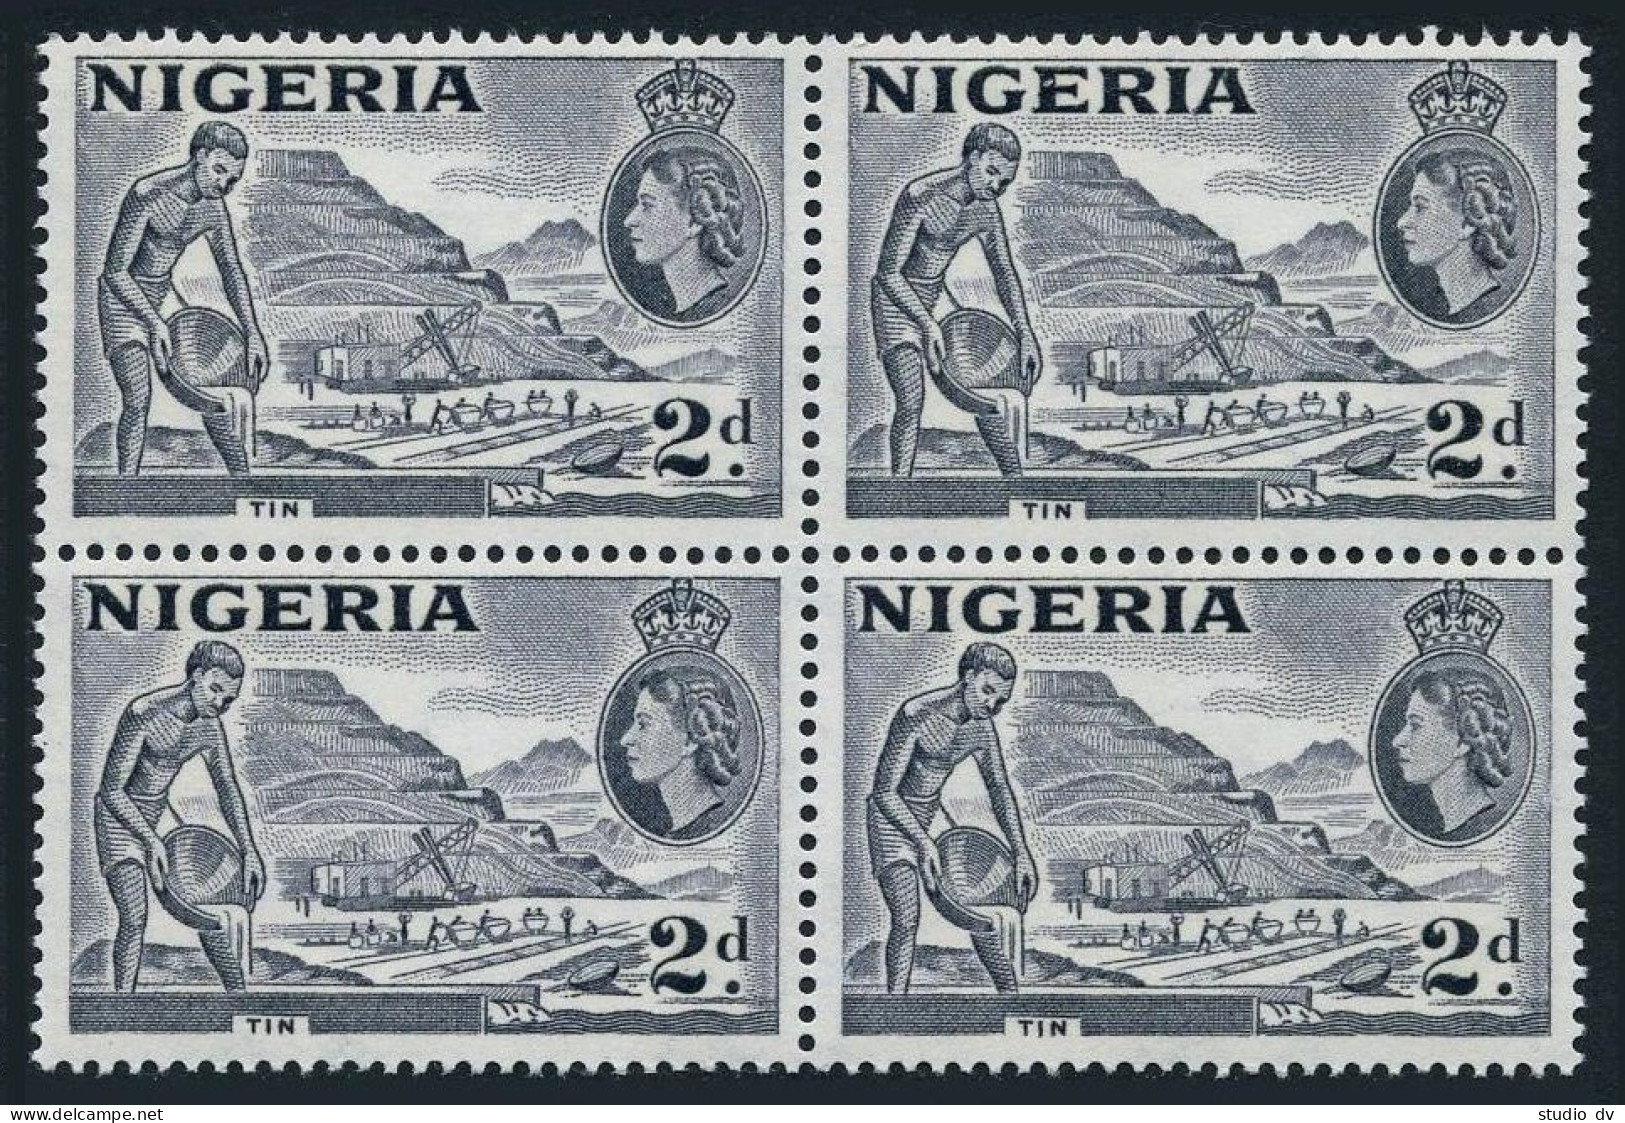 Nigeria 93 Block/4,MNH.Michel 75a Type I. QE II.Mining Tin,1956. - Niger (1960-...)